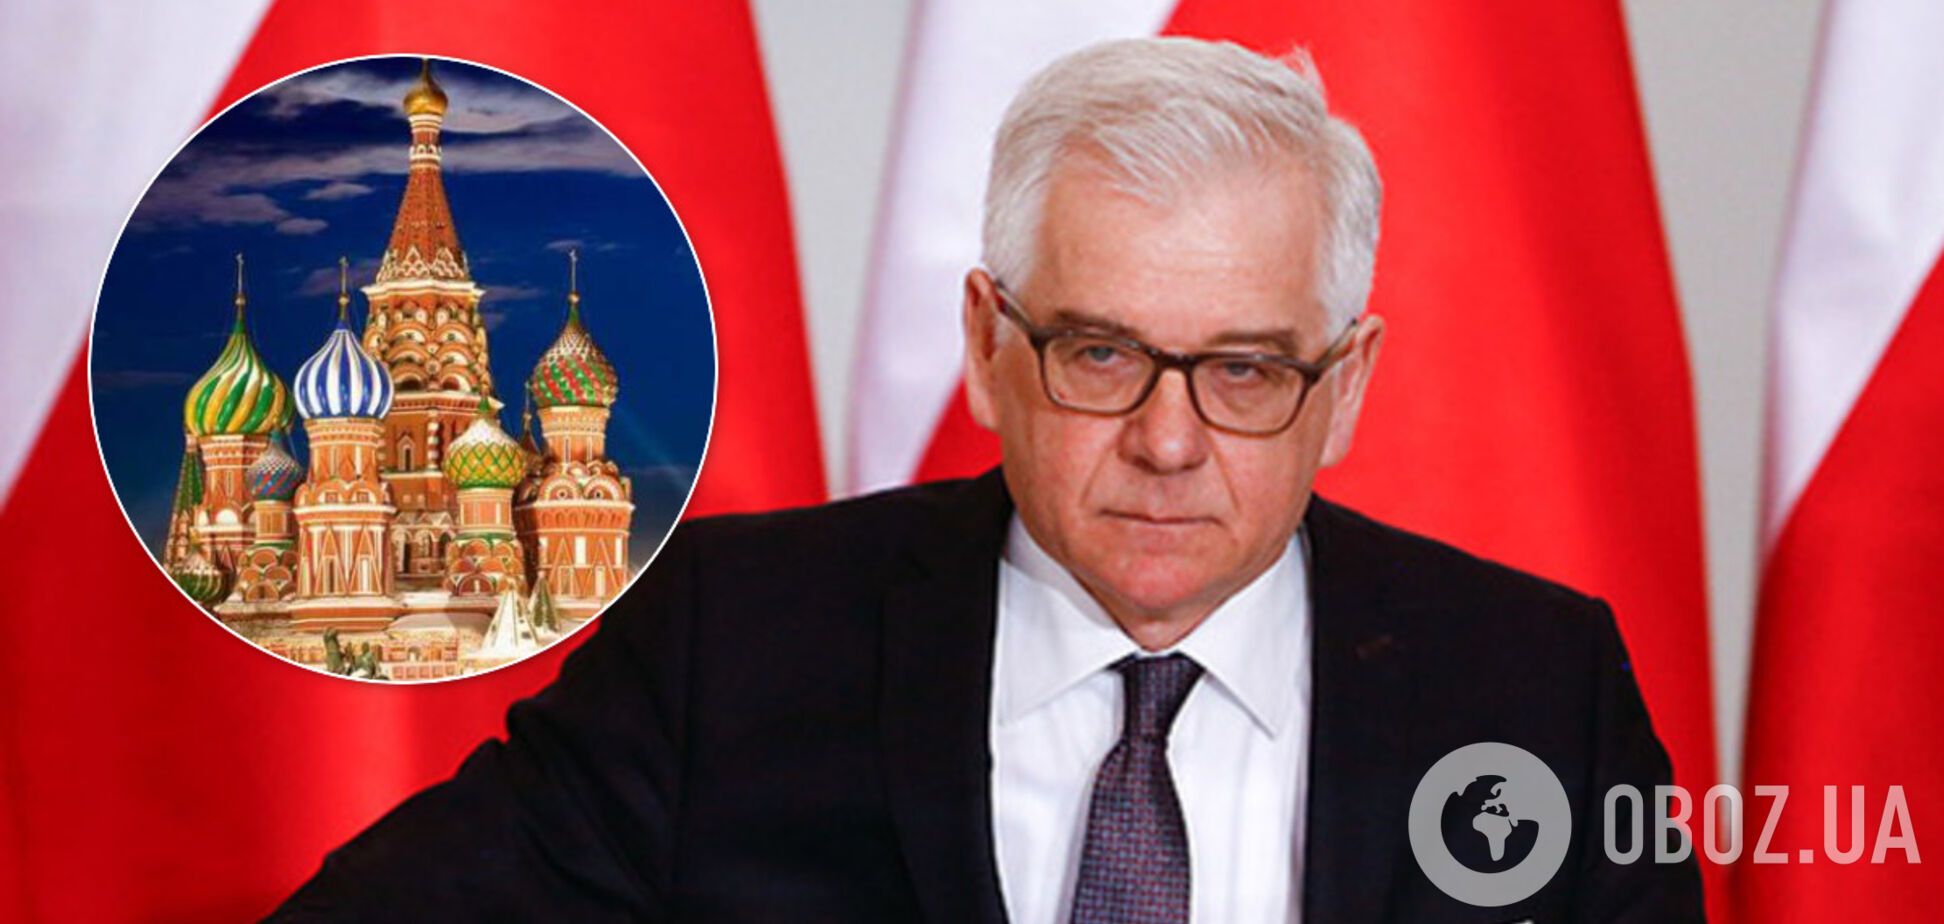 Чапутовіч назвав Росію загрозою для ЄС: в Держдумі відповіли